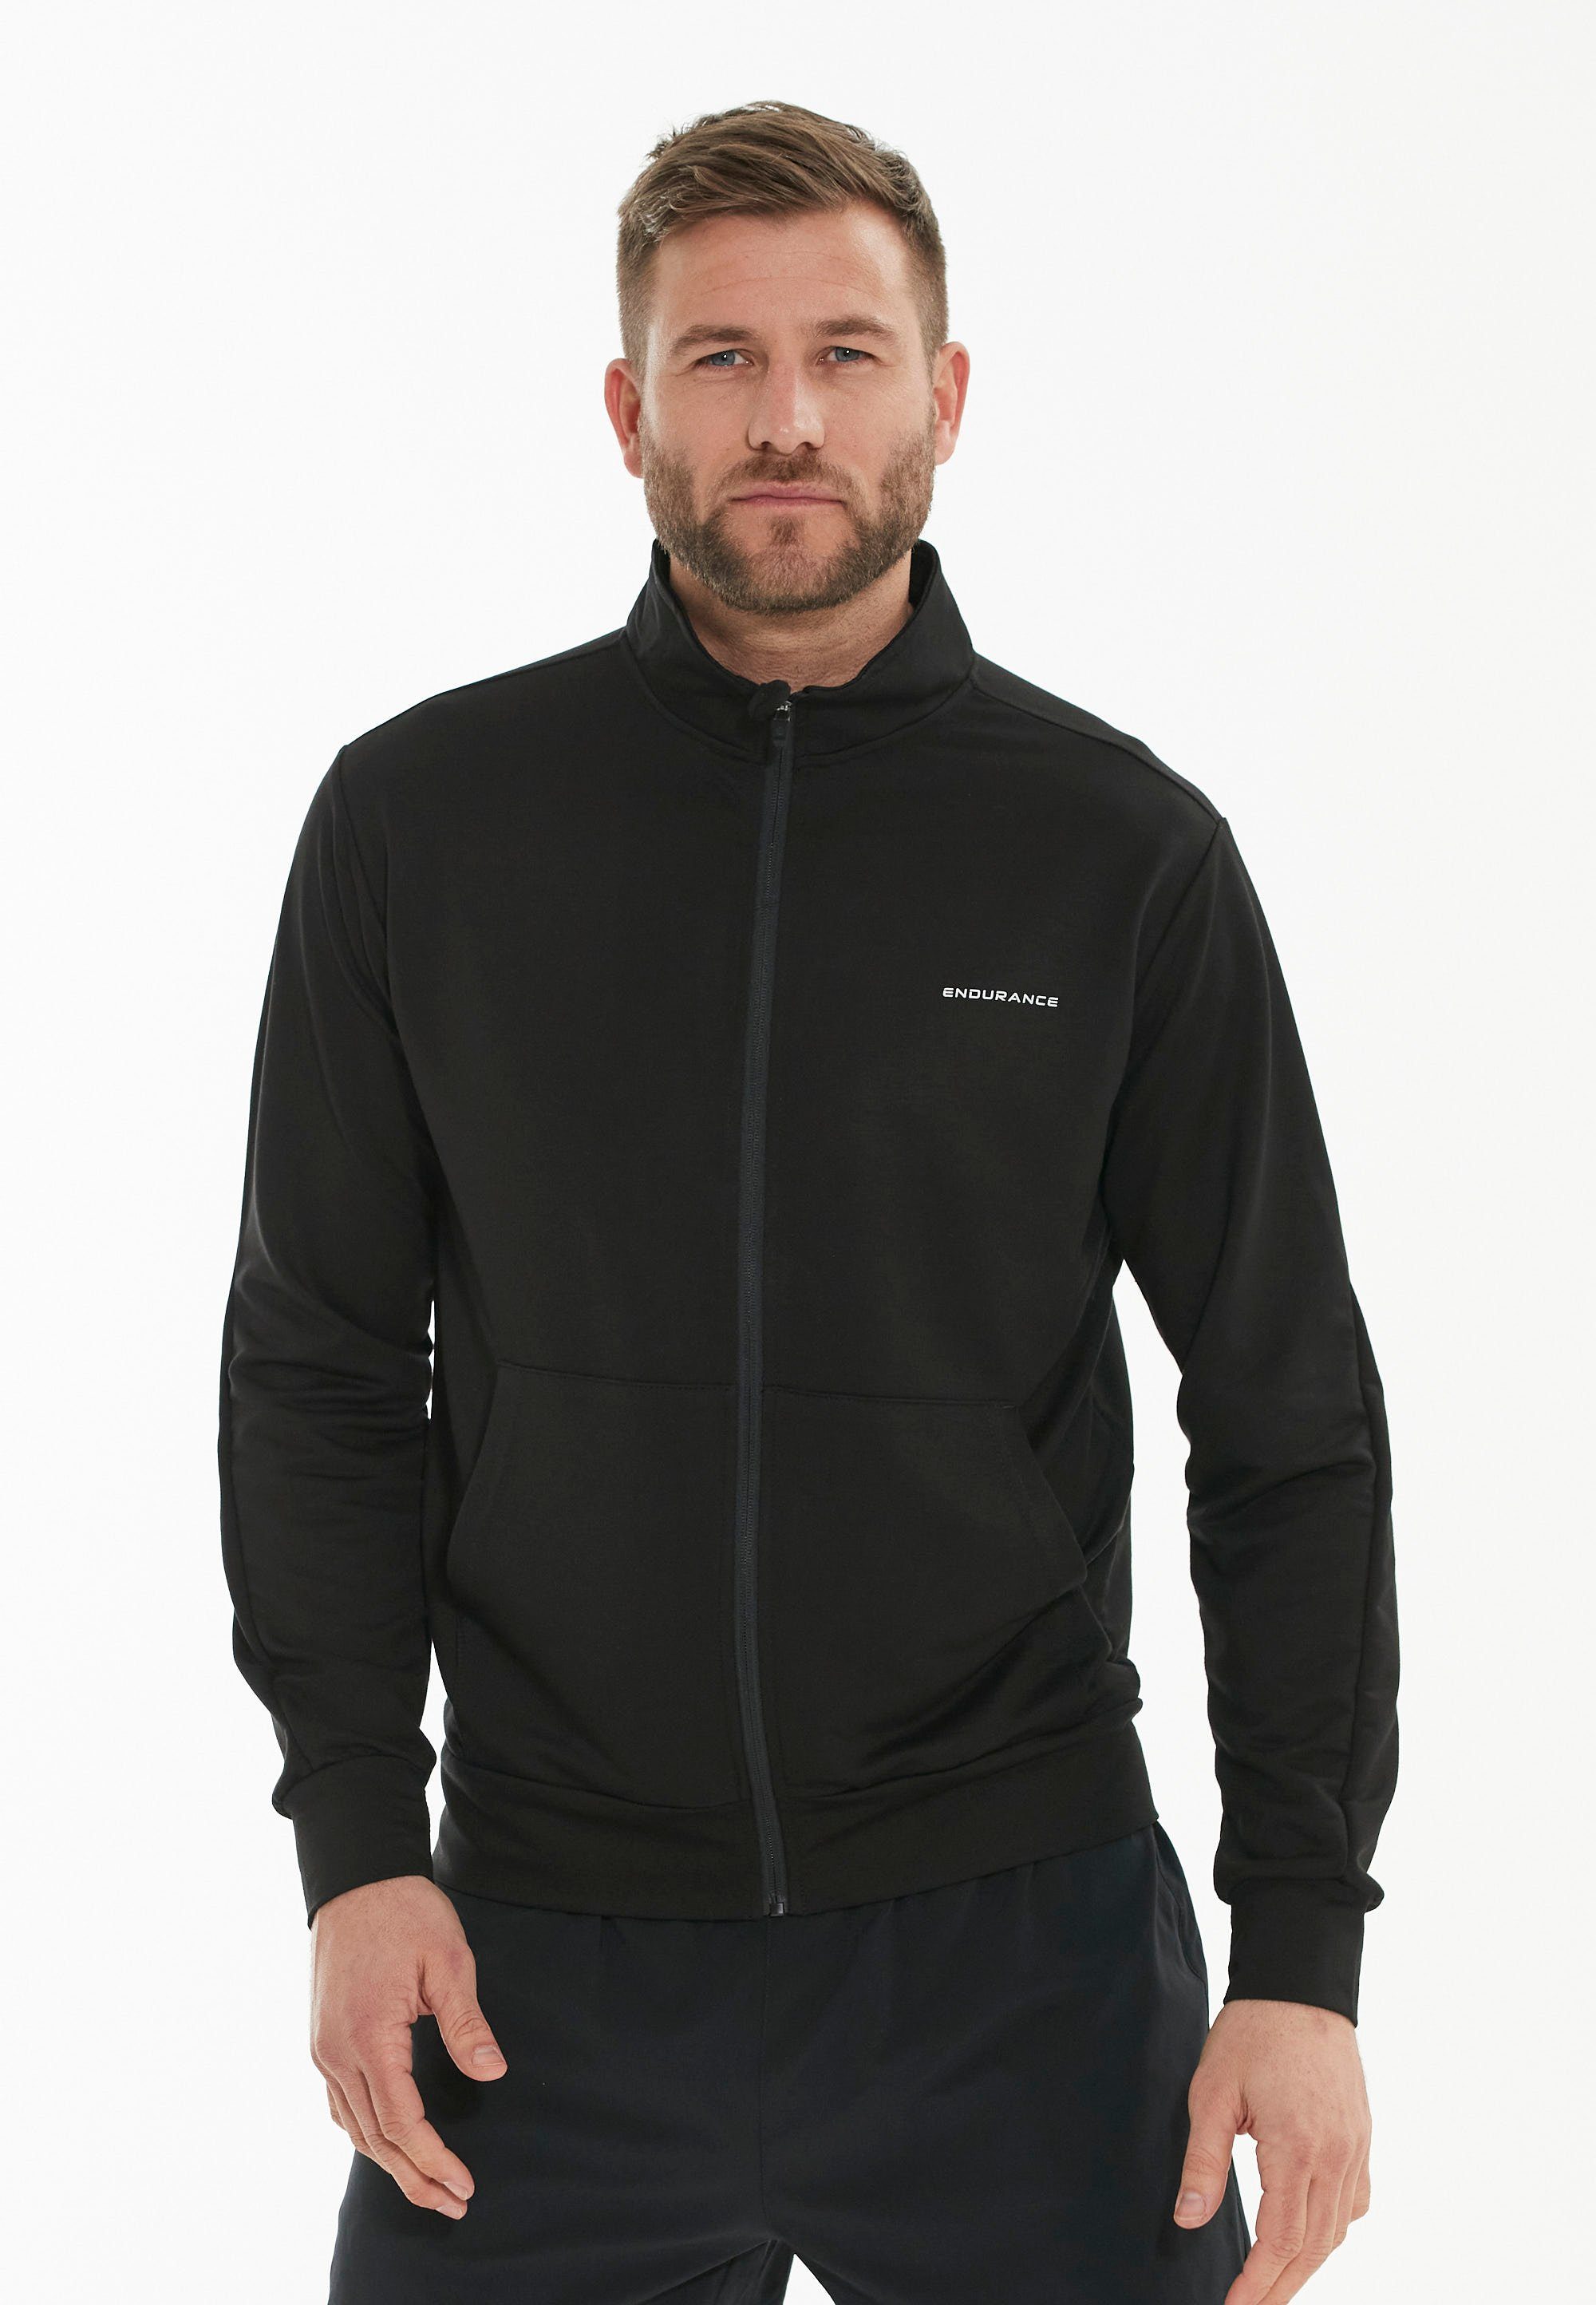 Sweatshirt praktischen schwarz ENDURANCE Loweer mit Seitentaschen